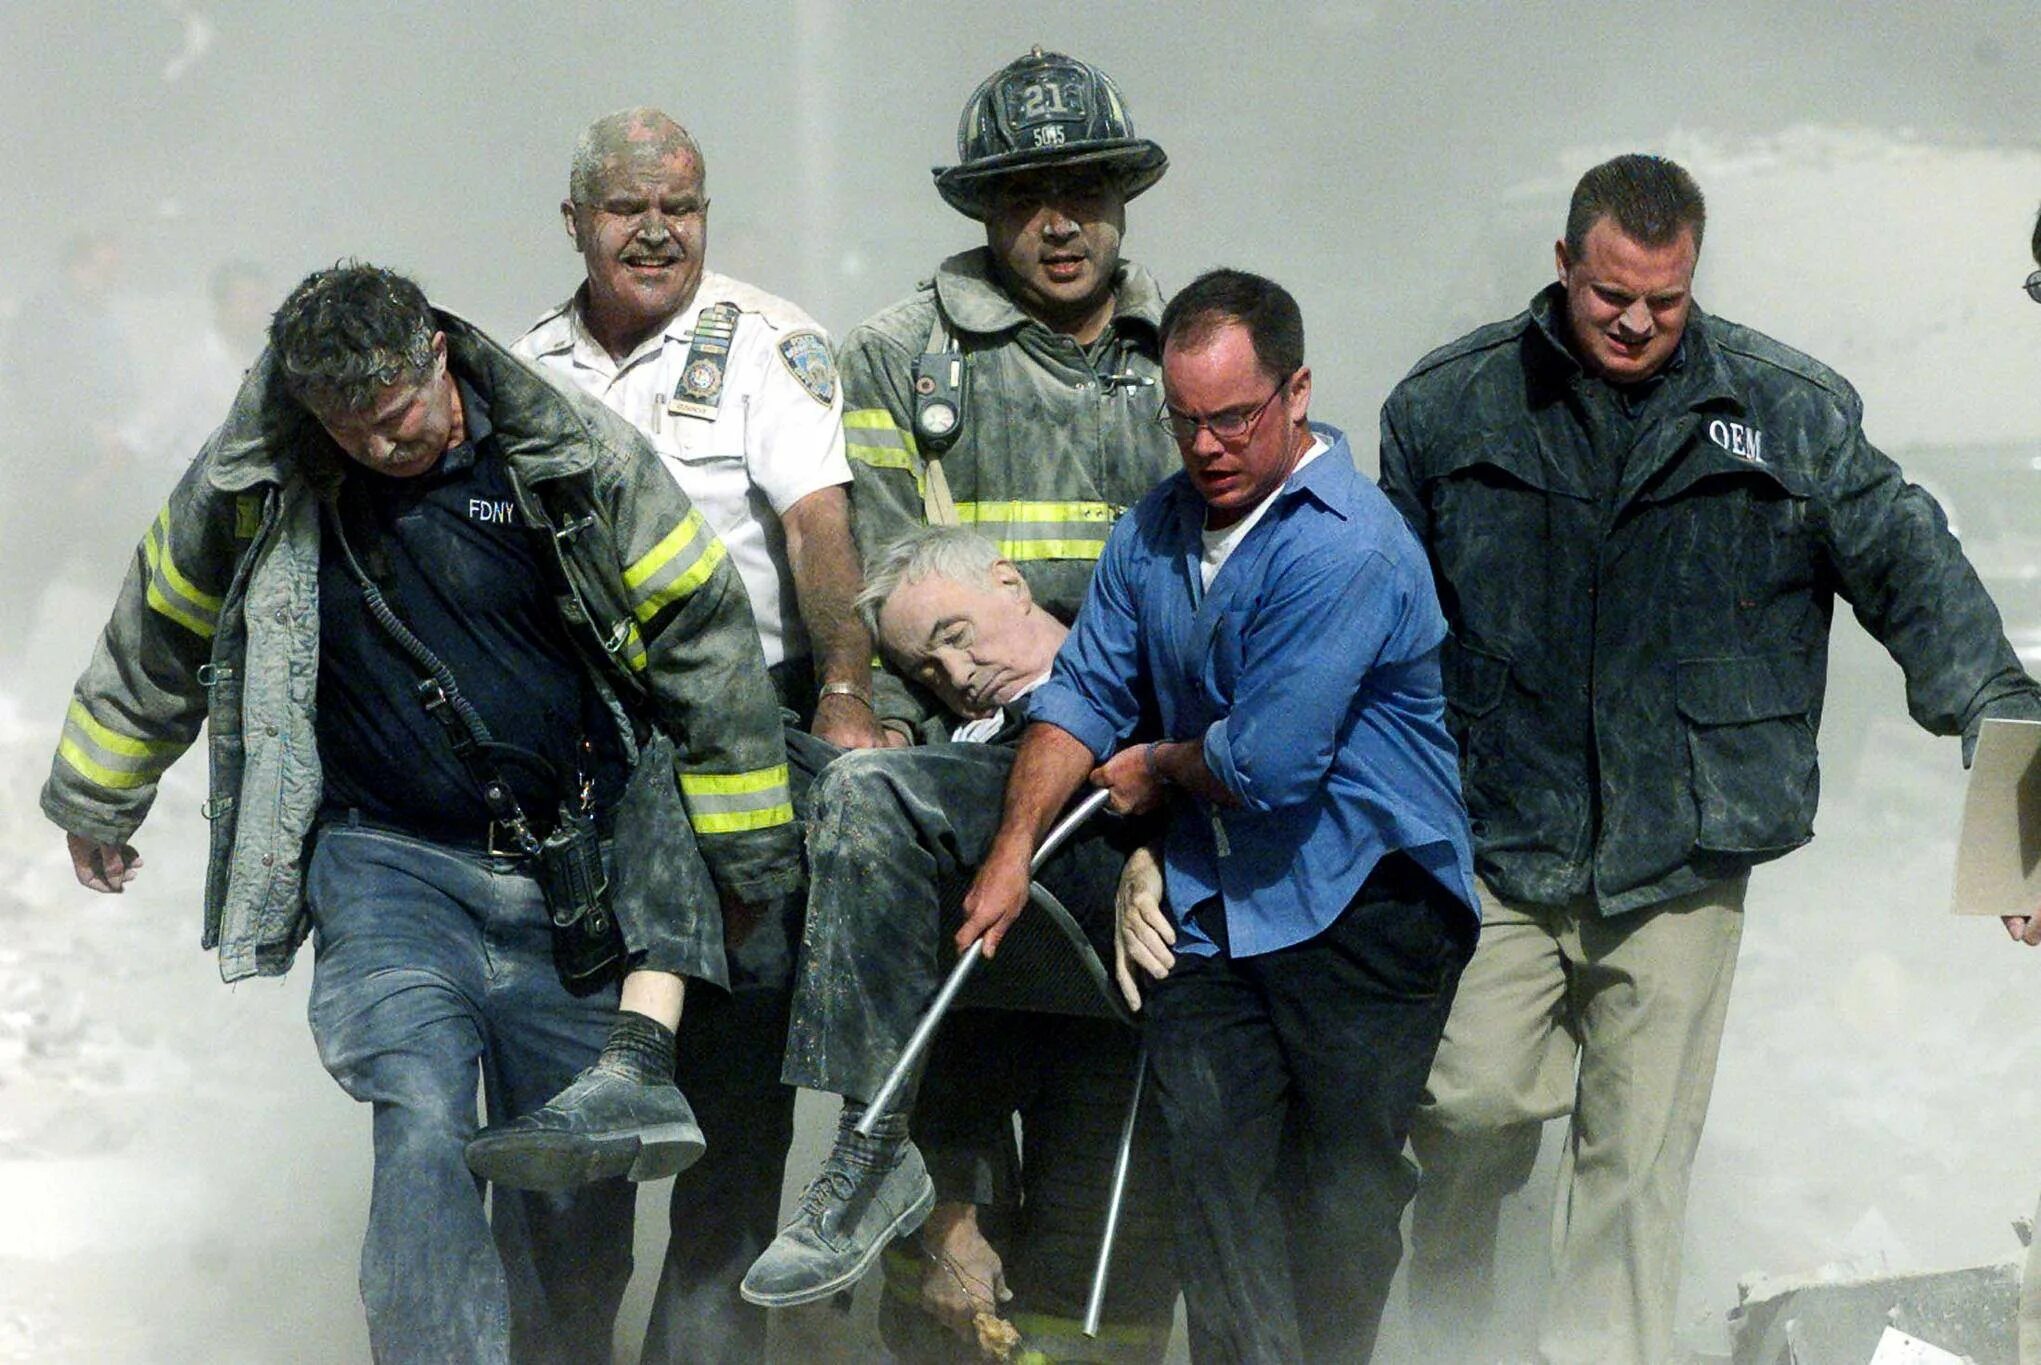 Сколько человек погибло в торговом. Спасатели 11 сентября 2001. Теракт в Нью-Йорке 11 сентября 2001. Башни Близнецы 11 сентября жертвы. Число погибших 11 сентября 2001.